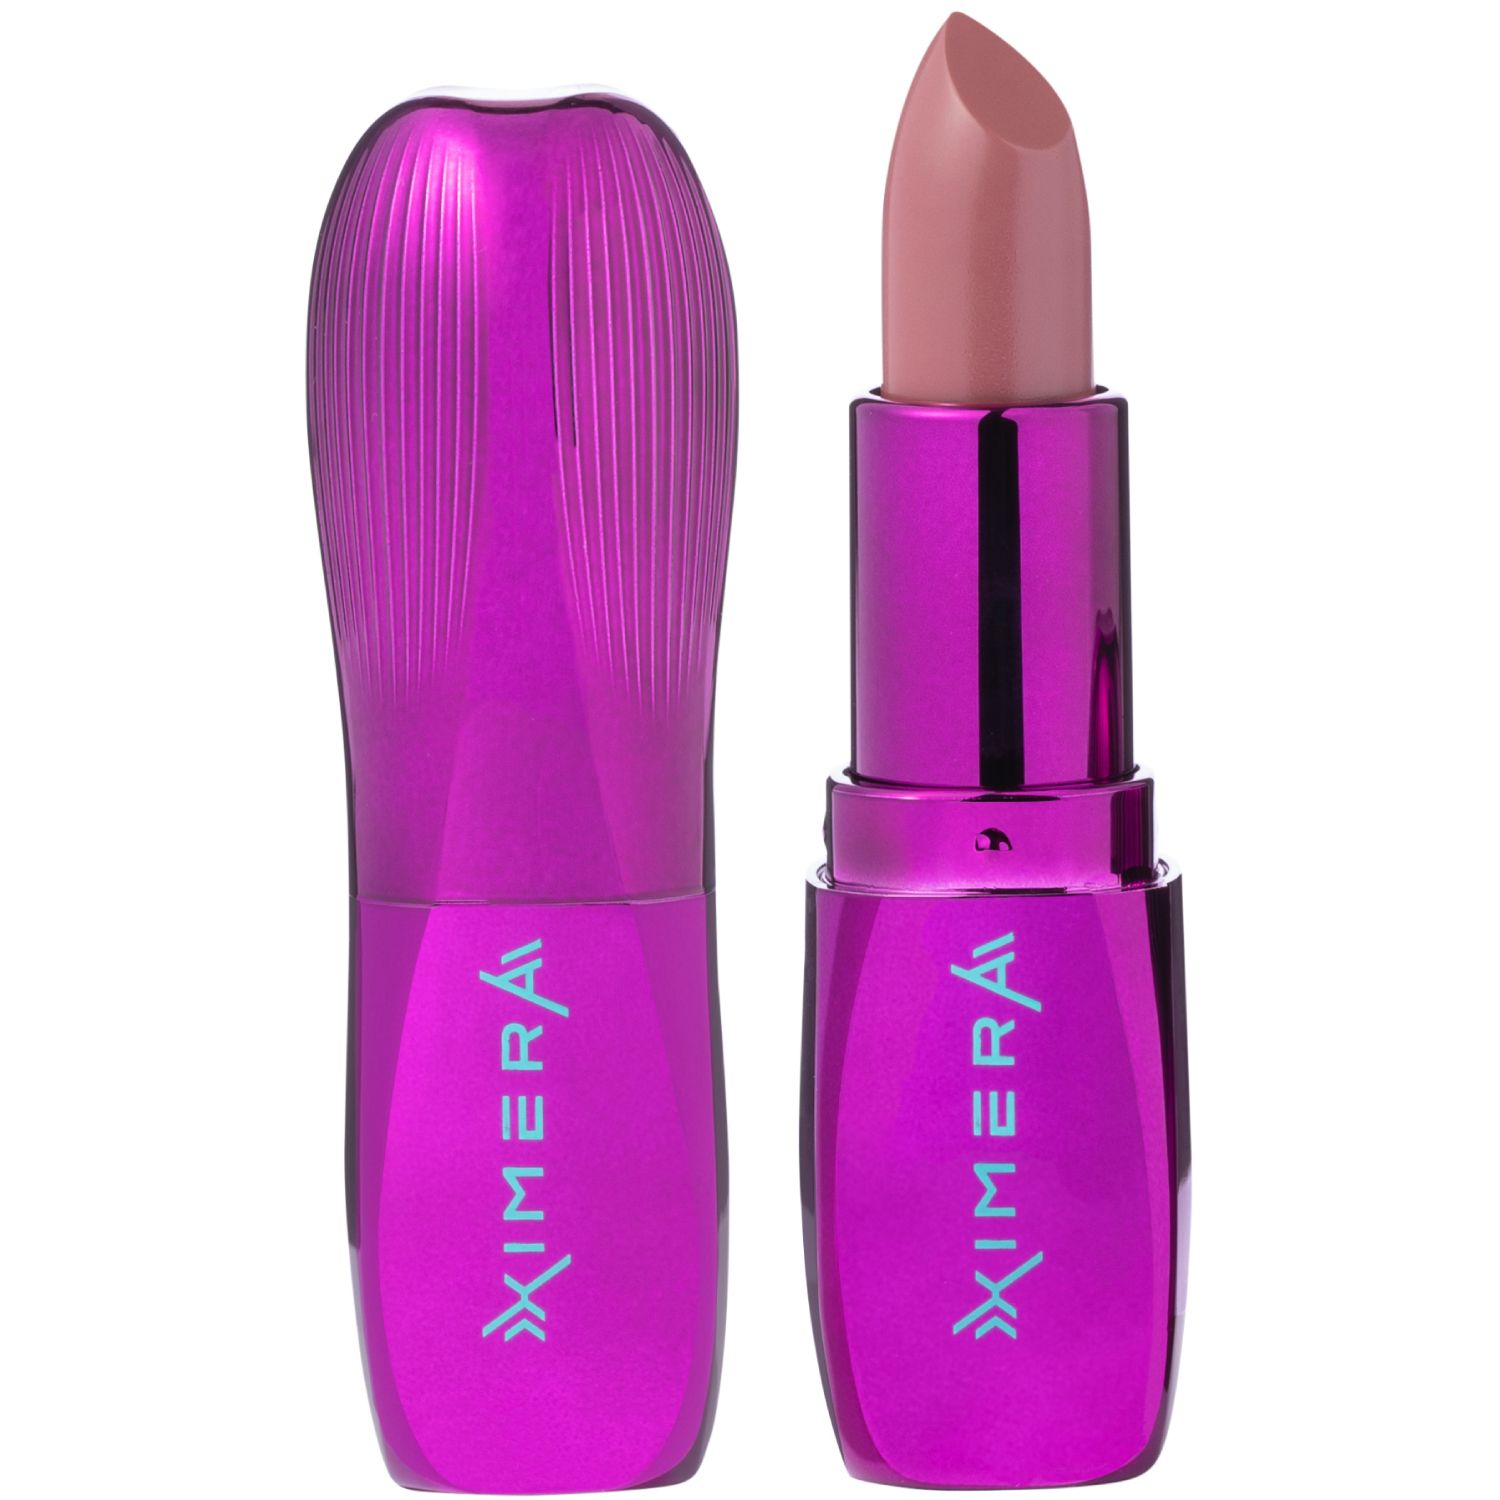 Помада Influence Beauty XIMERA для губ, тон 02: коричнево-розовый полупрозрачный нюд, 4 г